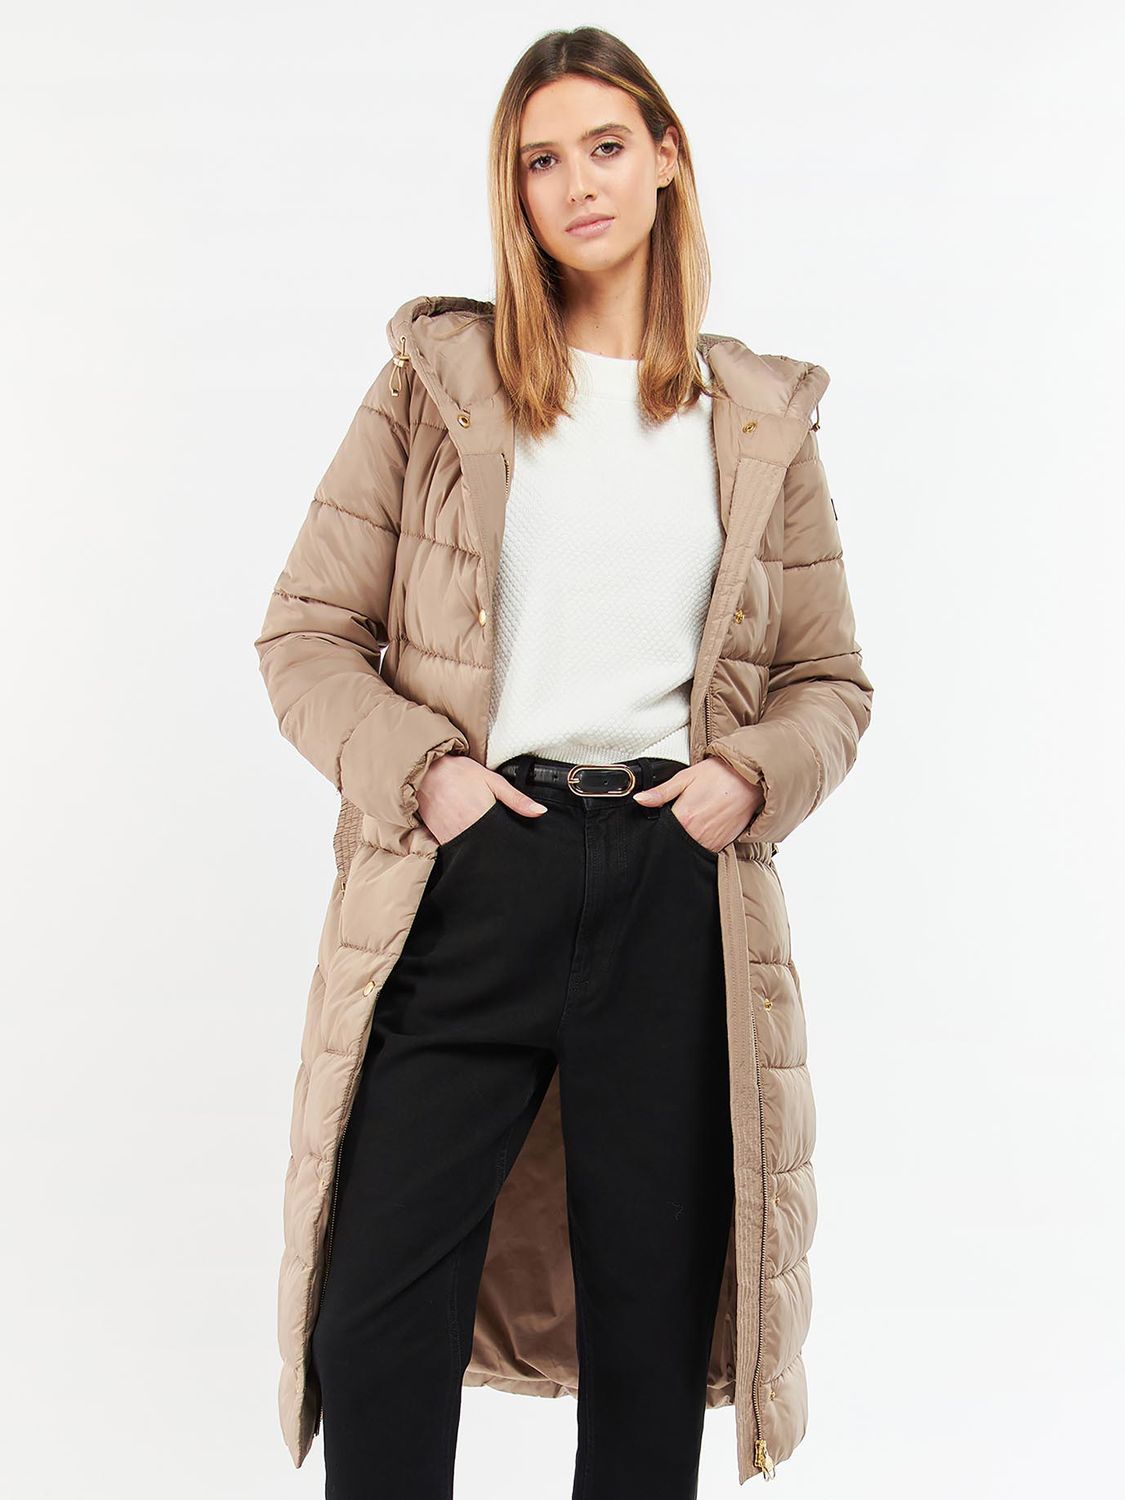 discount 64% Black M Ralph Lauren Long coat WOMEN FASHION Coats Long coat Casual 